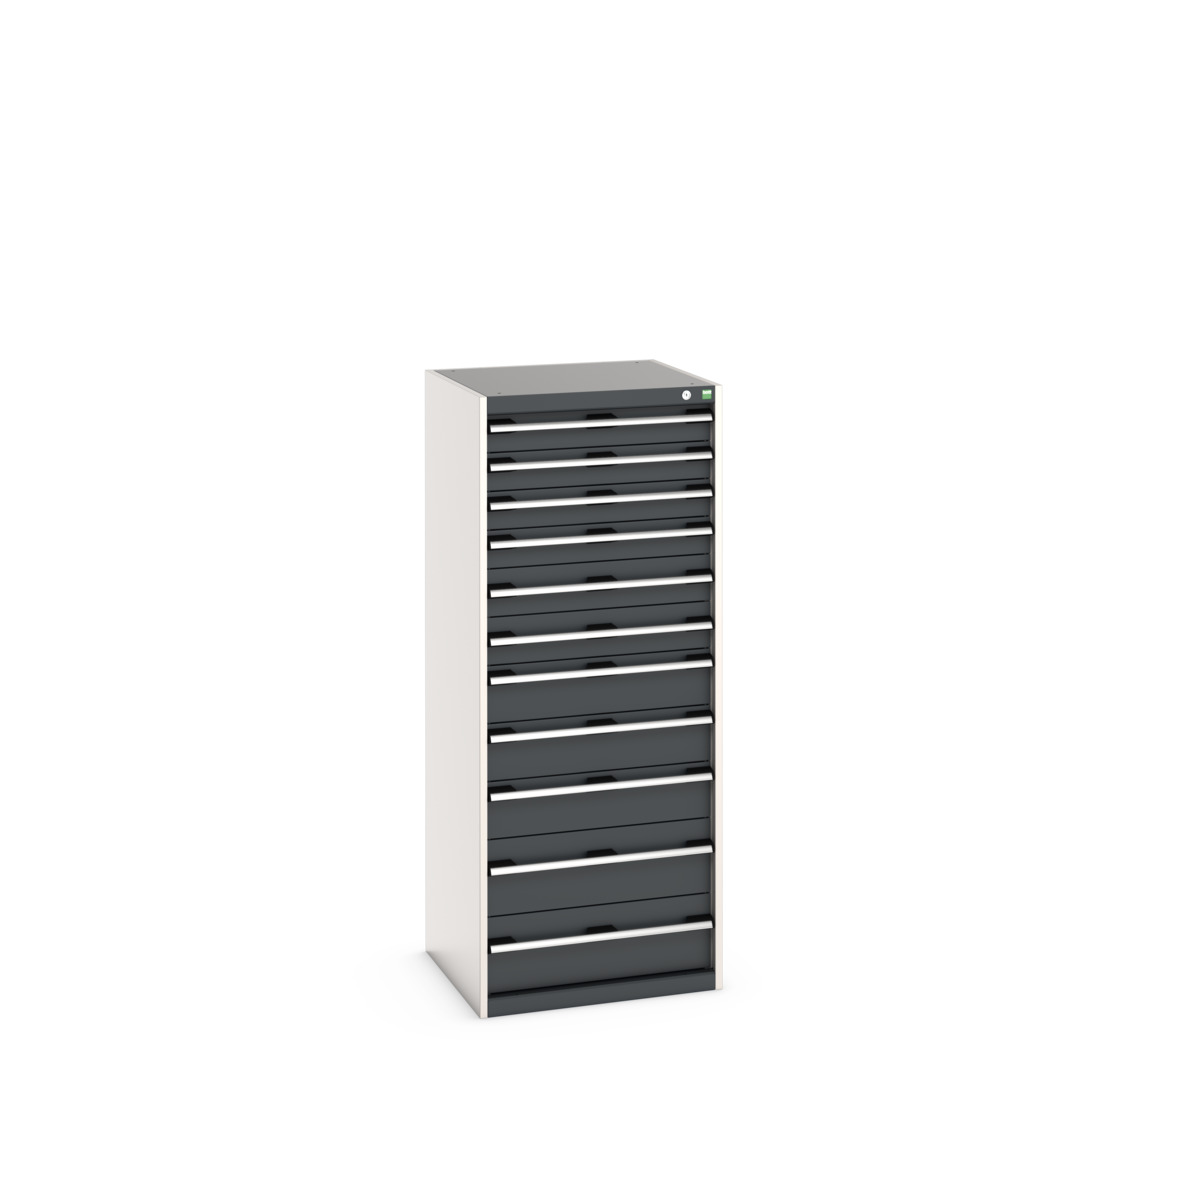 40019156.19V - cubio drawer cabinet